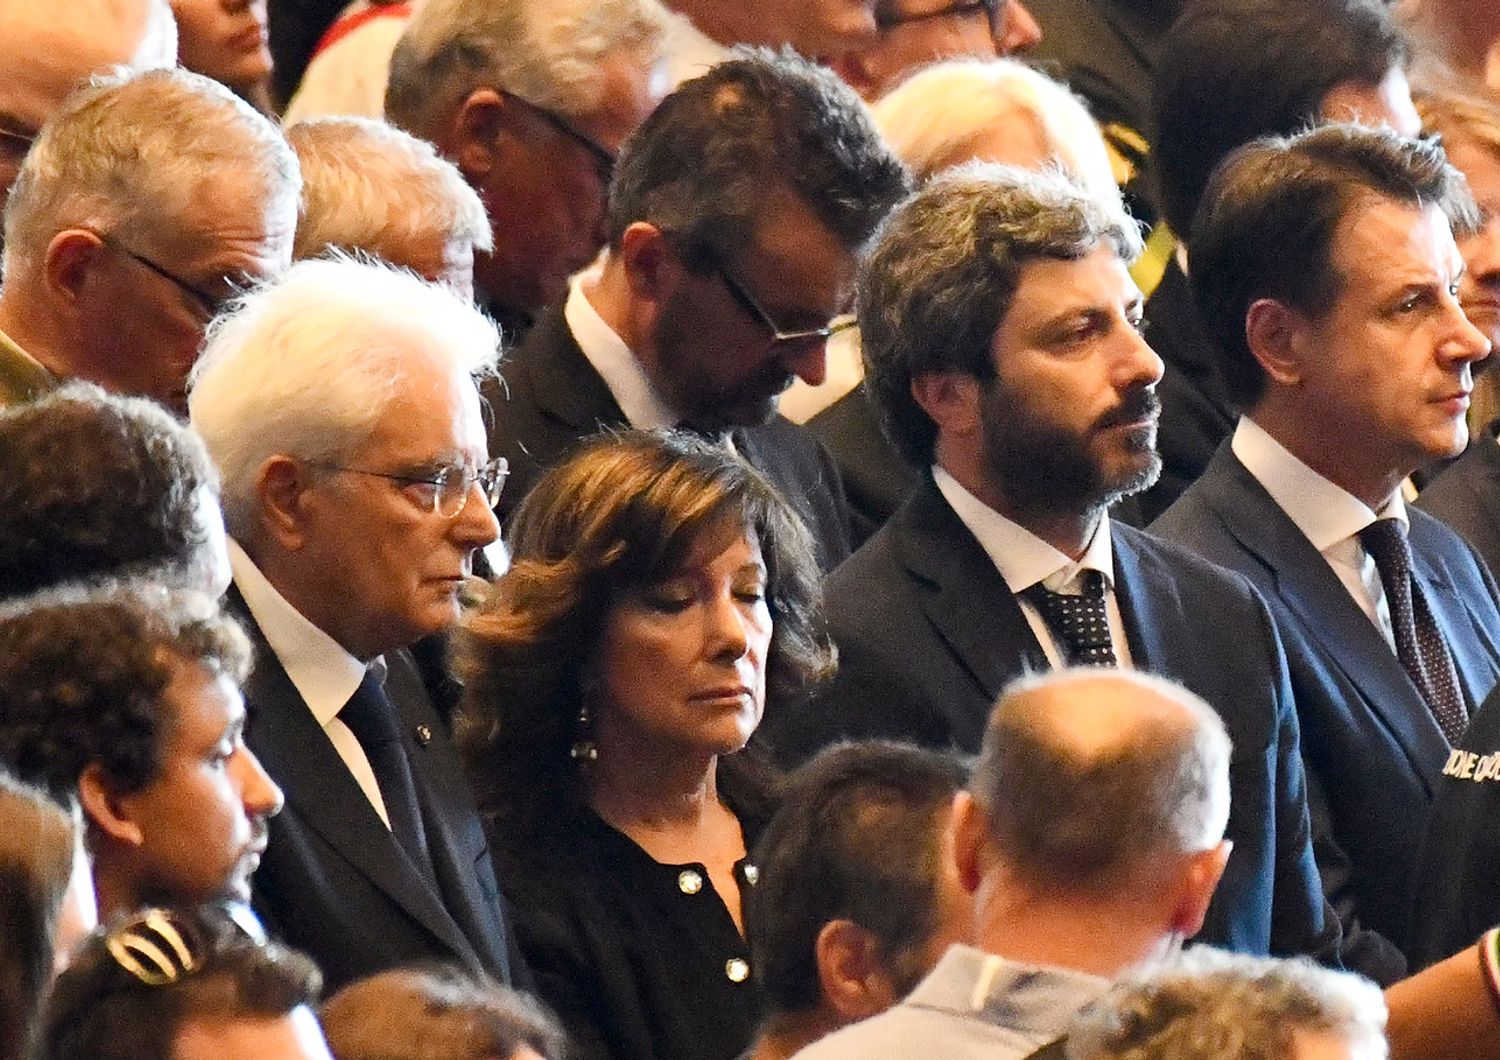 &nbsp;Sergio Mattarella, Maria Elisabetta Casellati, Roberto Fico e Giuseppe Conte ai funerali delle vittime del crollo di Genova